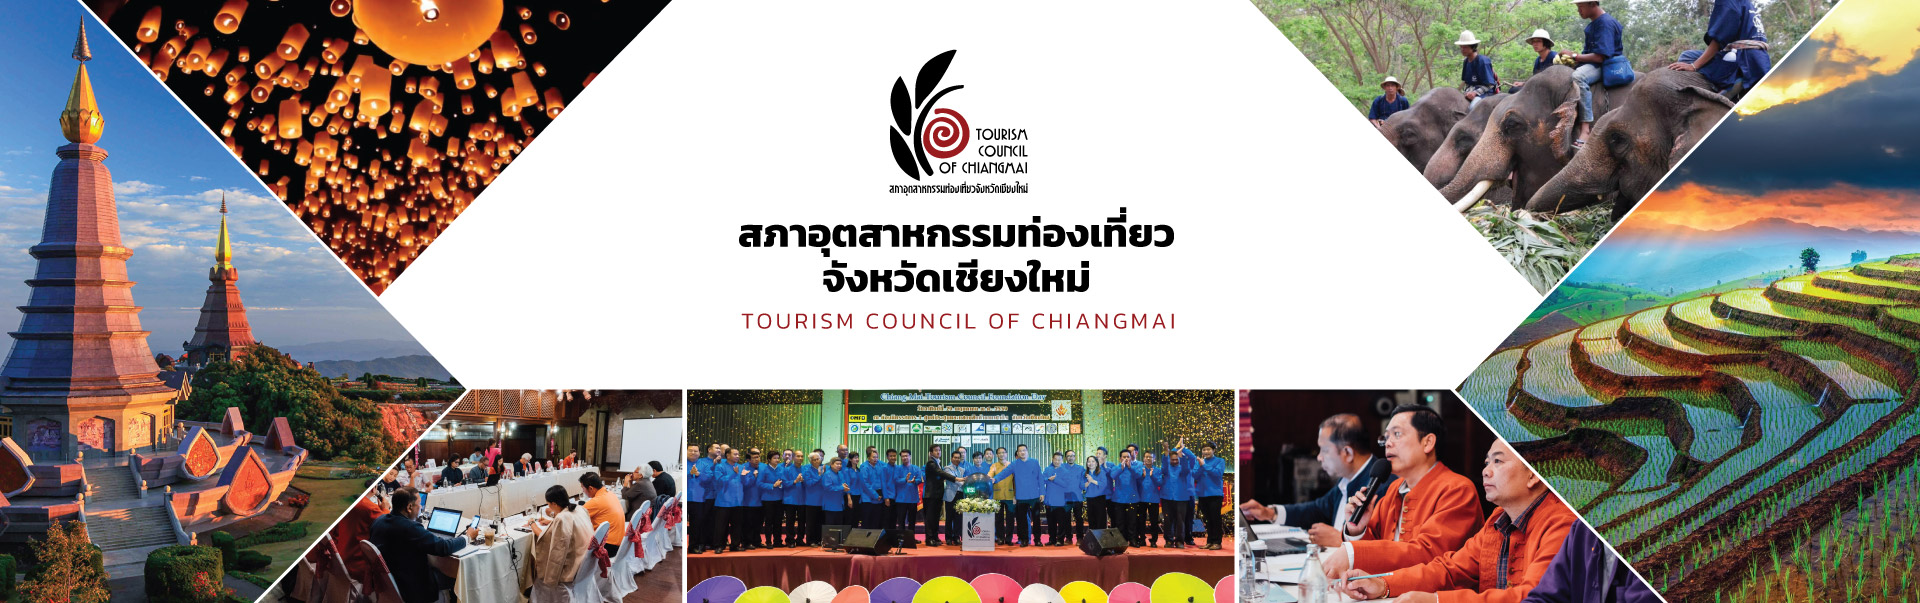 tourism council chiangmai